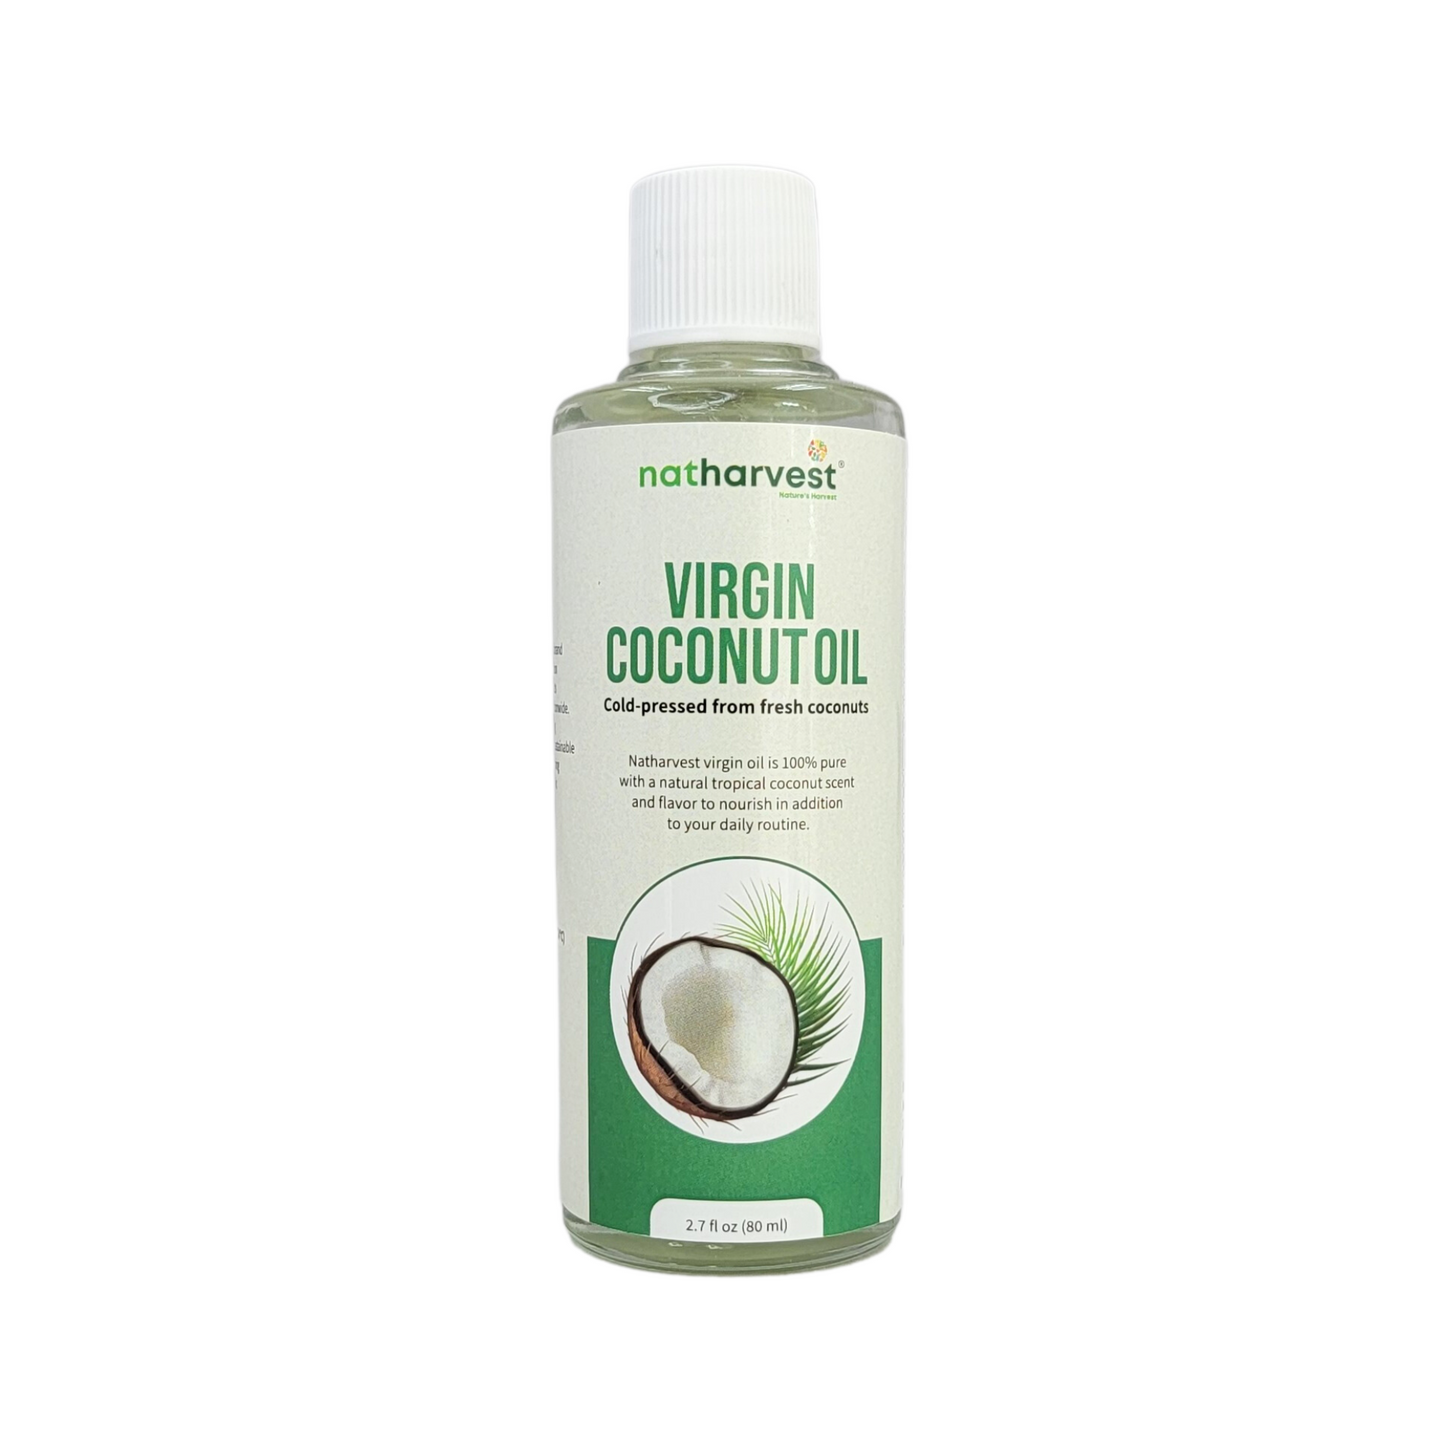 Natharvest Virgin Coconut Oil, 2.7 fl oz (80 ml)